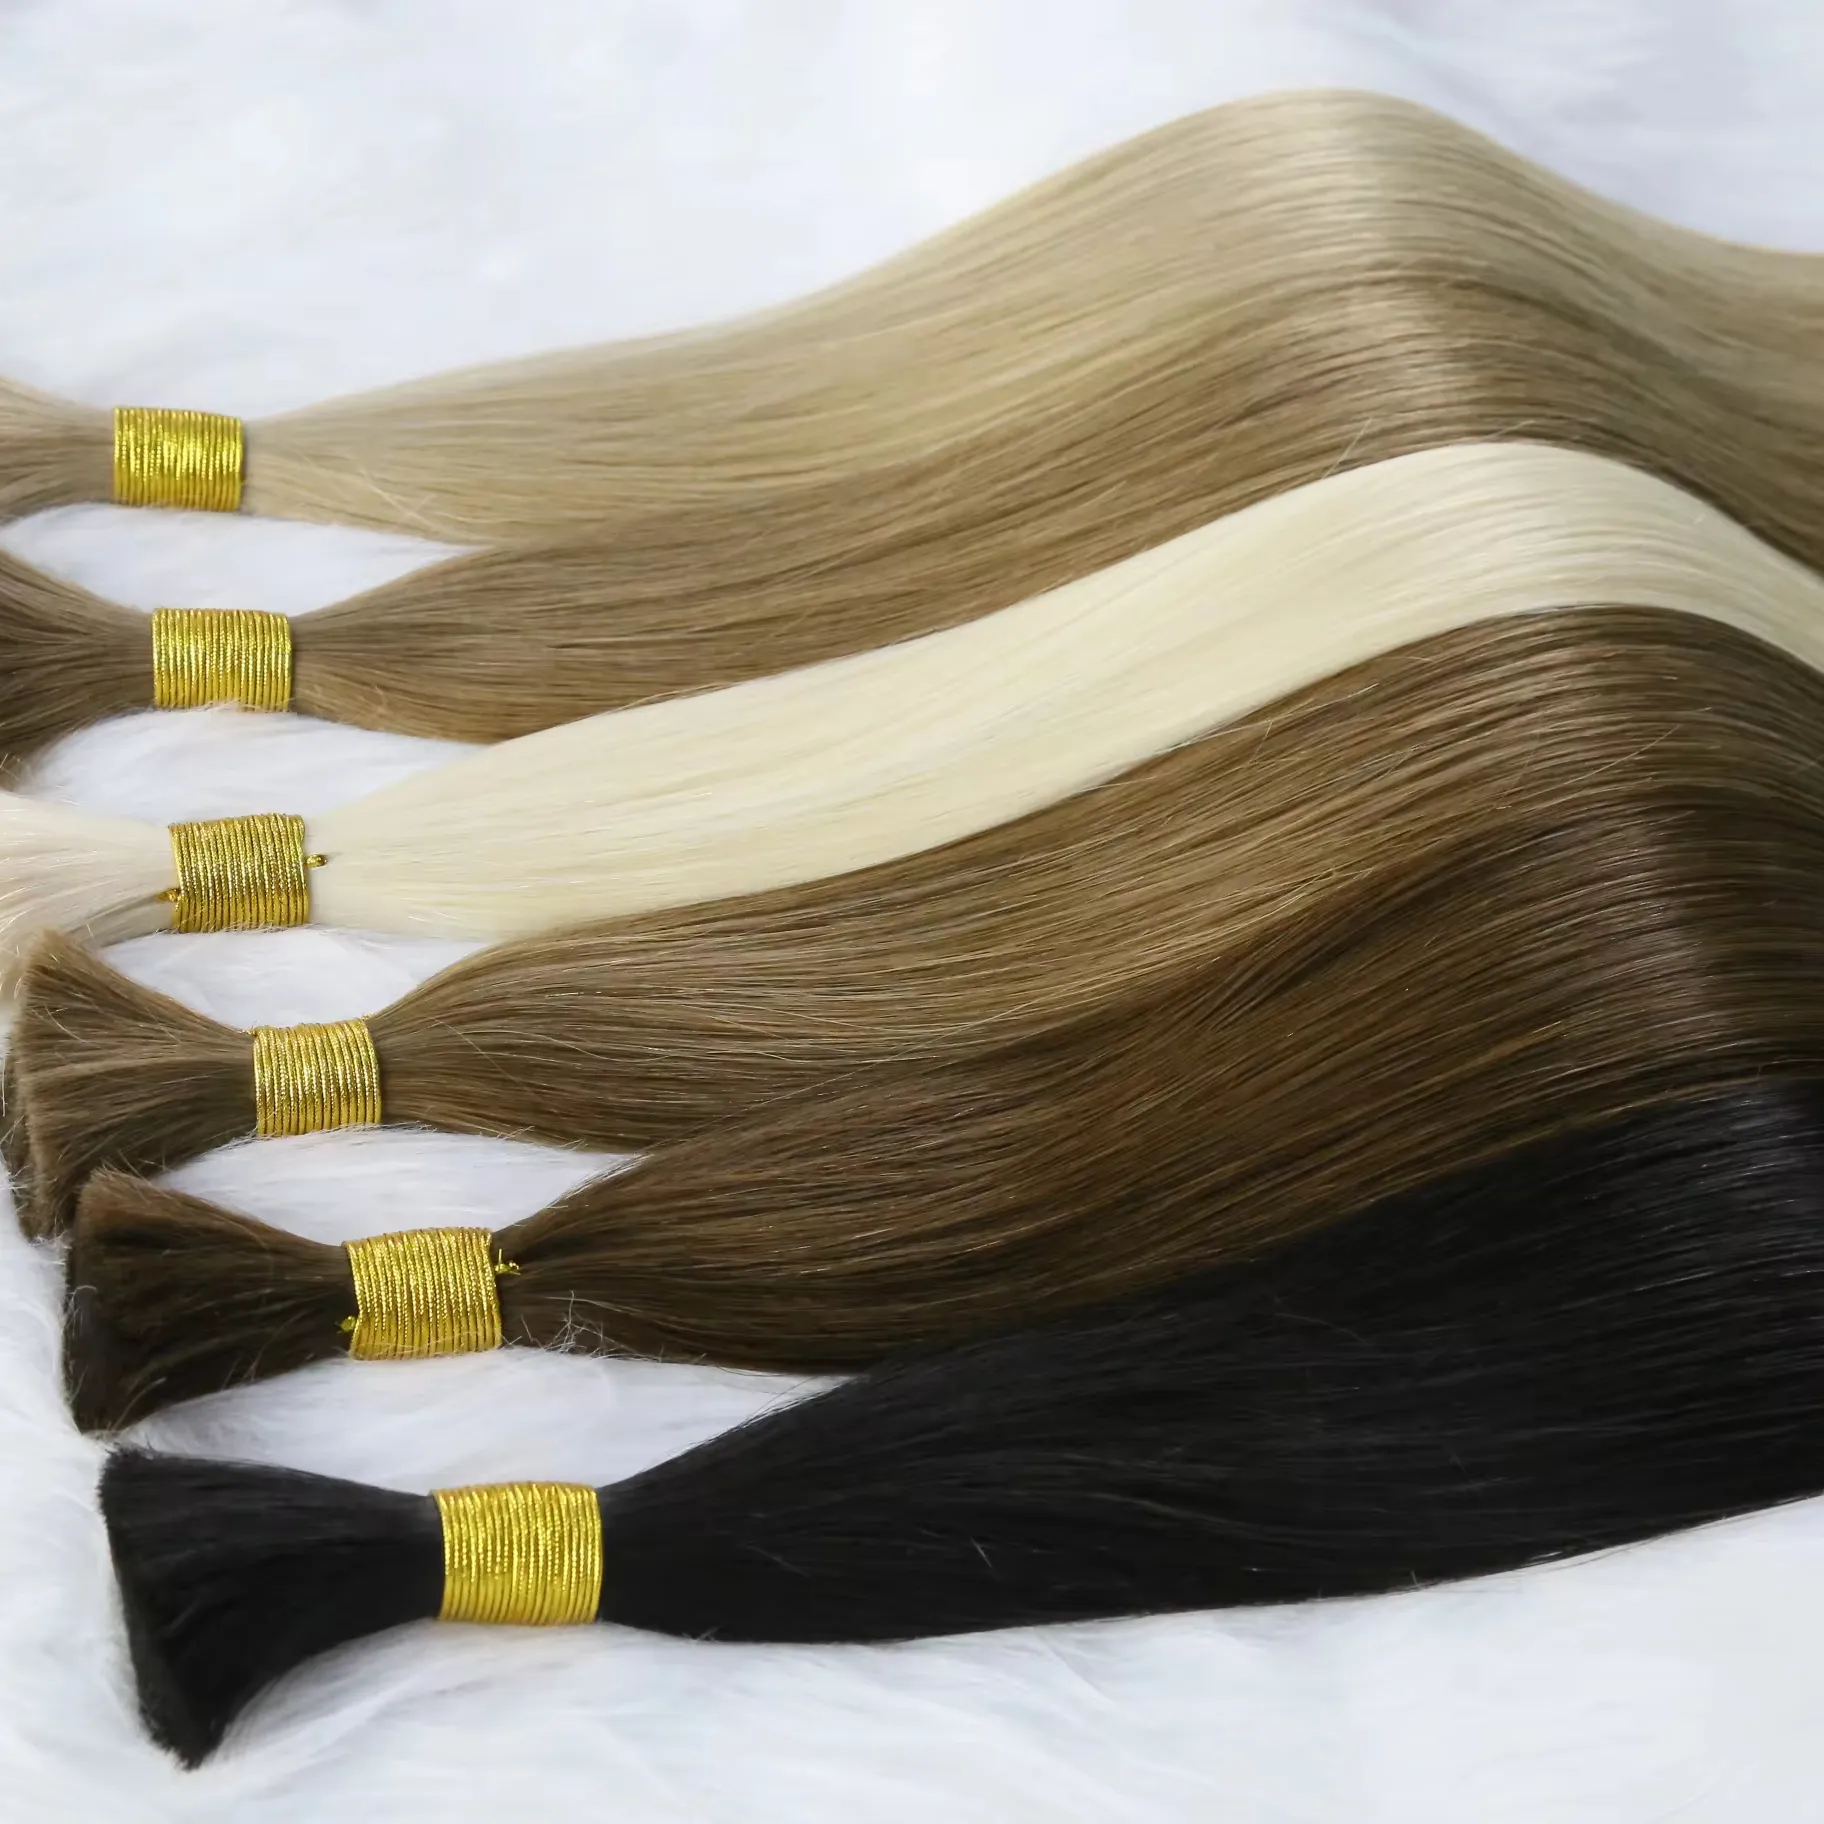 Virgin Remy ekstensi rambut manusia asli pabrik ekstensi rambut jumlah besar virgin belum diproses 100% rambut alami massal untuk ekstensi